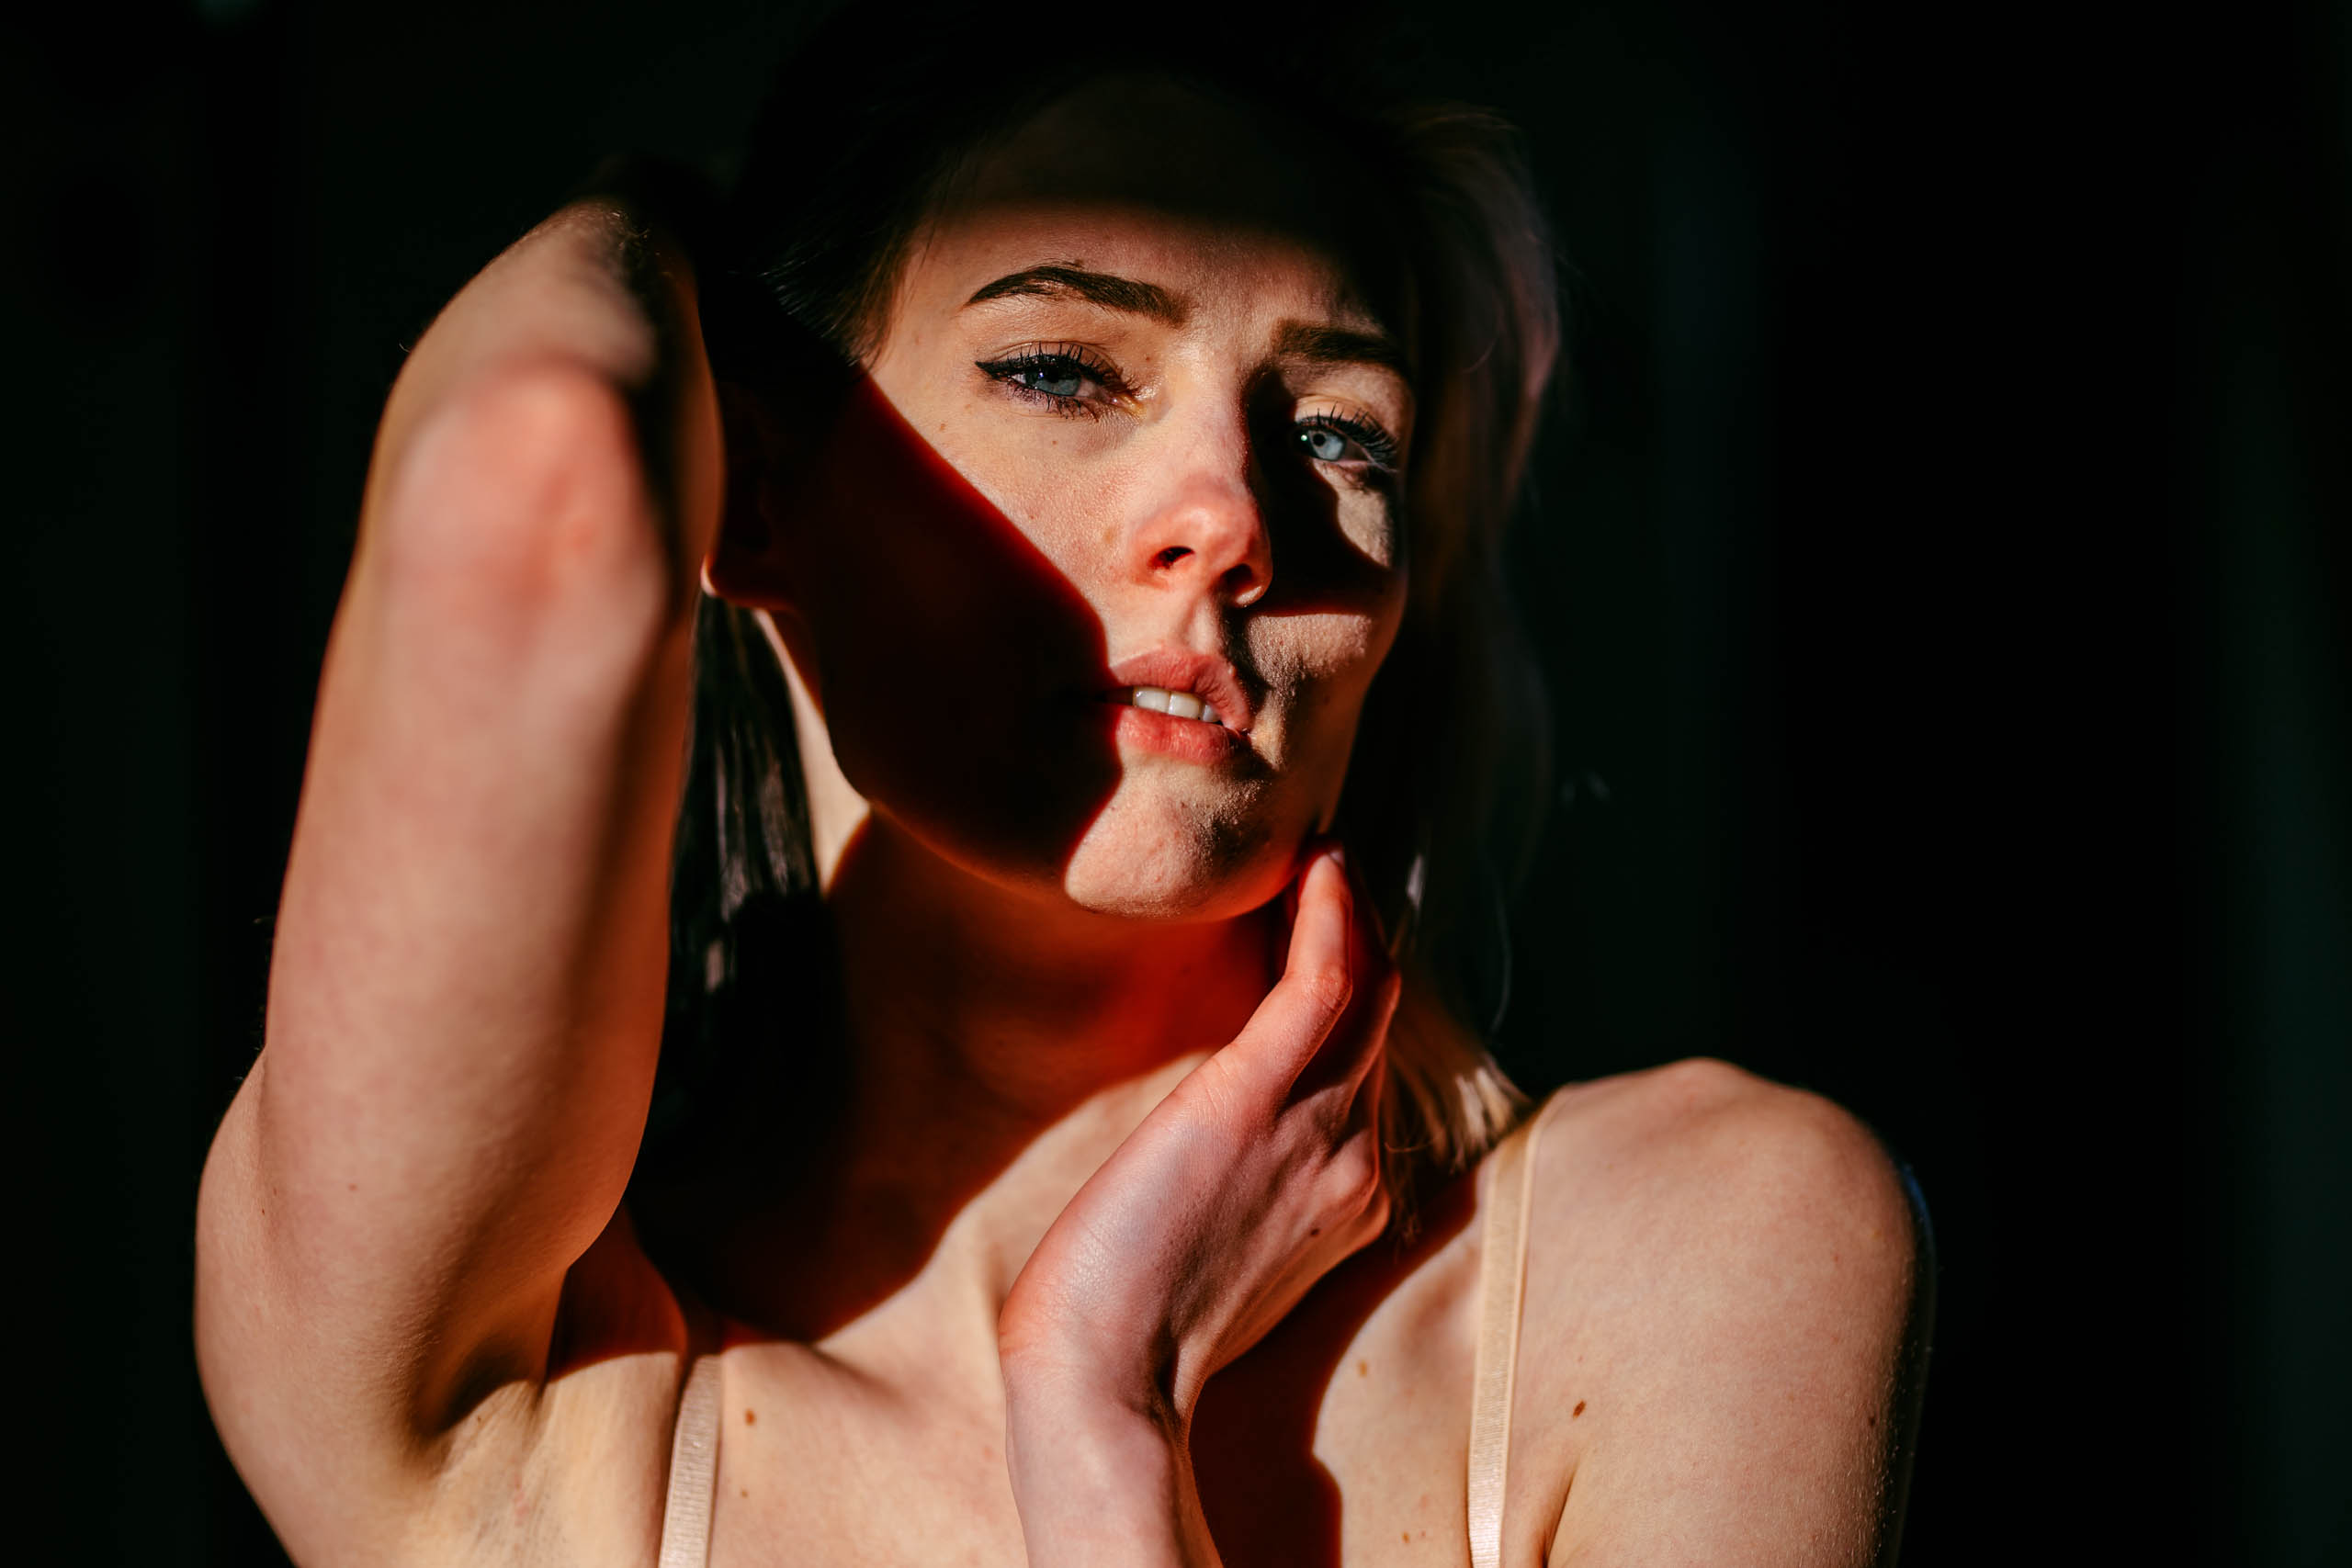 Een vrouw poseert in een donkere kamer tijdens een boudoirshoot, met haar hand op haar gezicht.